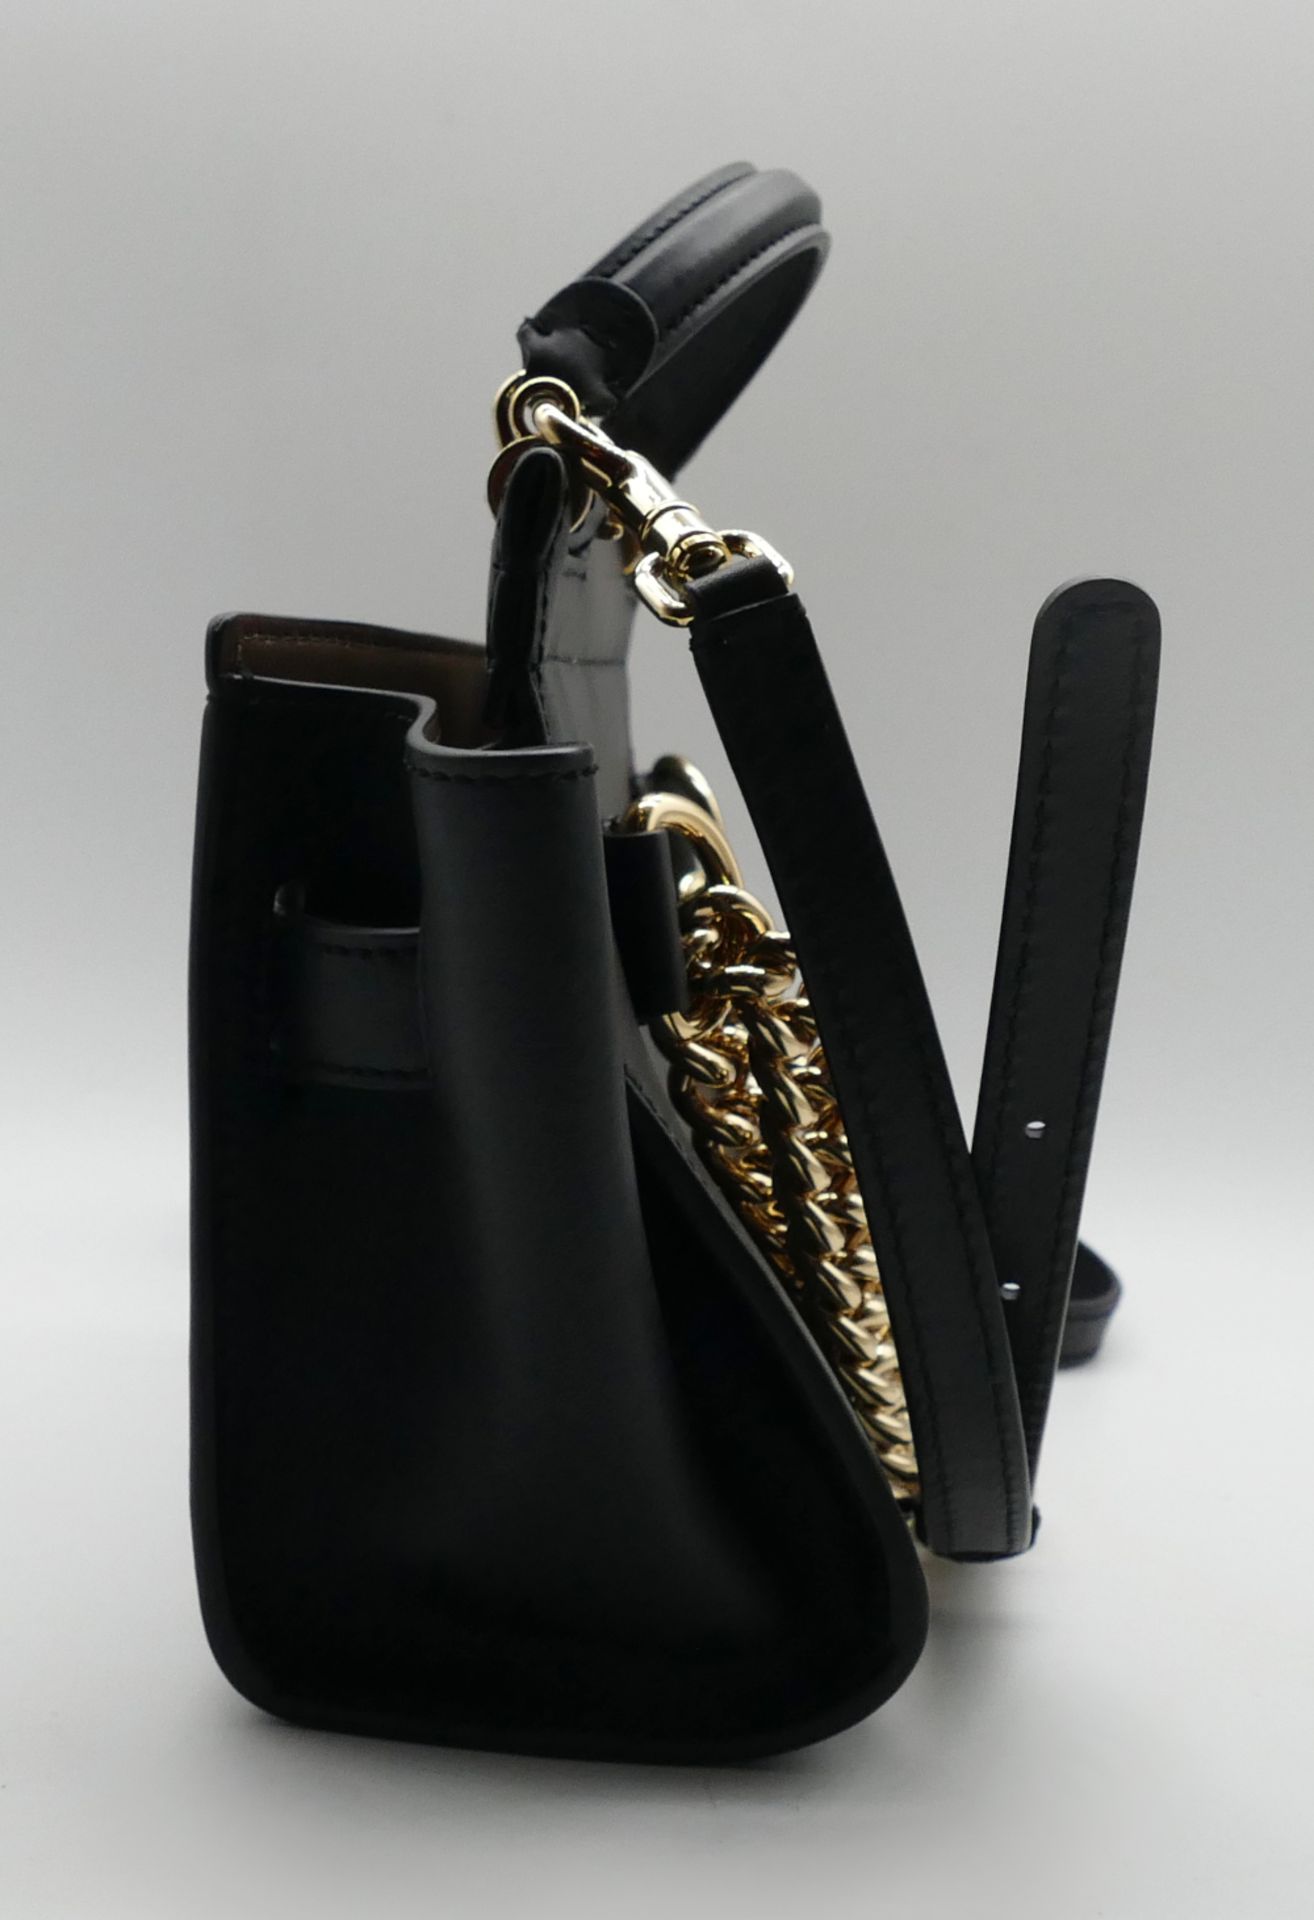 1 Damenhandtasche D&G, schwarzes Glattleder, mit 2 zusätzlichen (abnehmbaren) Schulterriemen, innen - Bild 4 aus 4